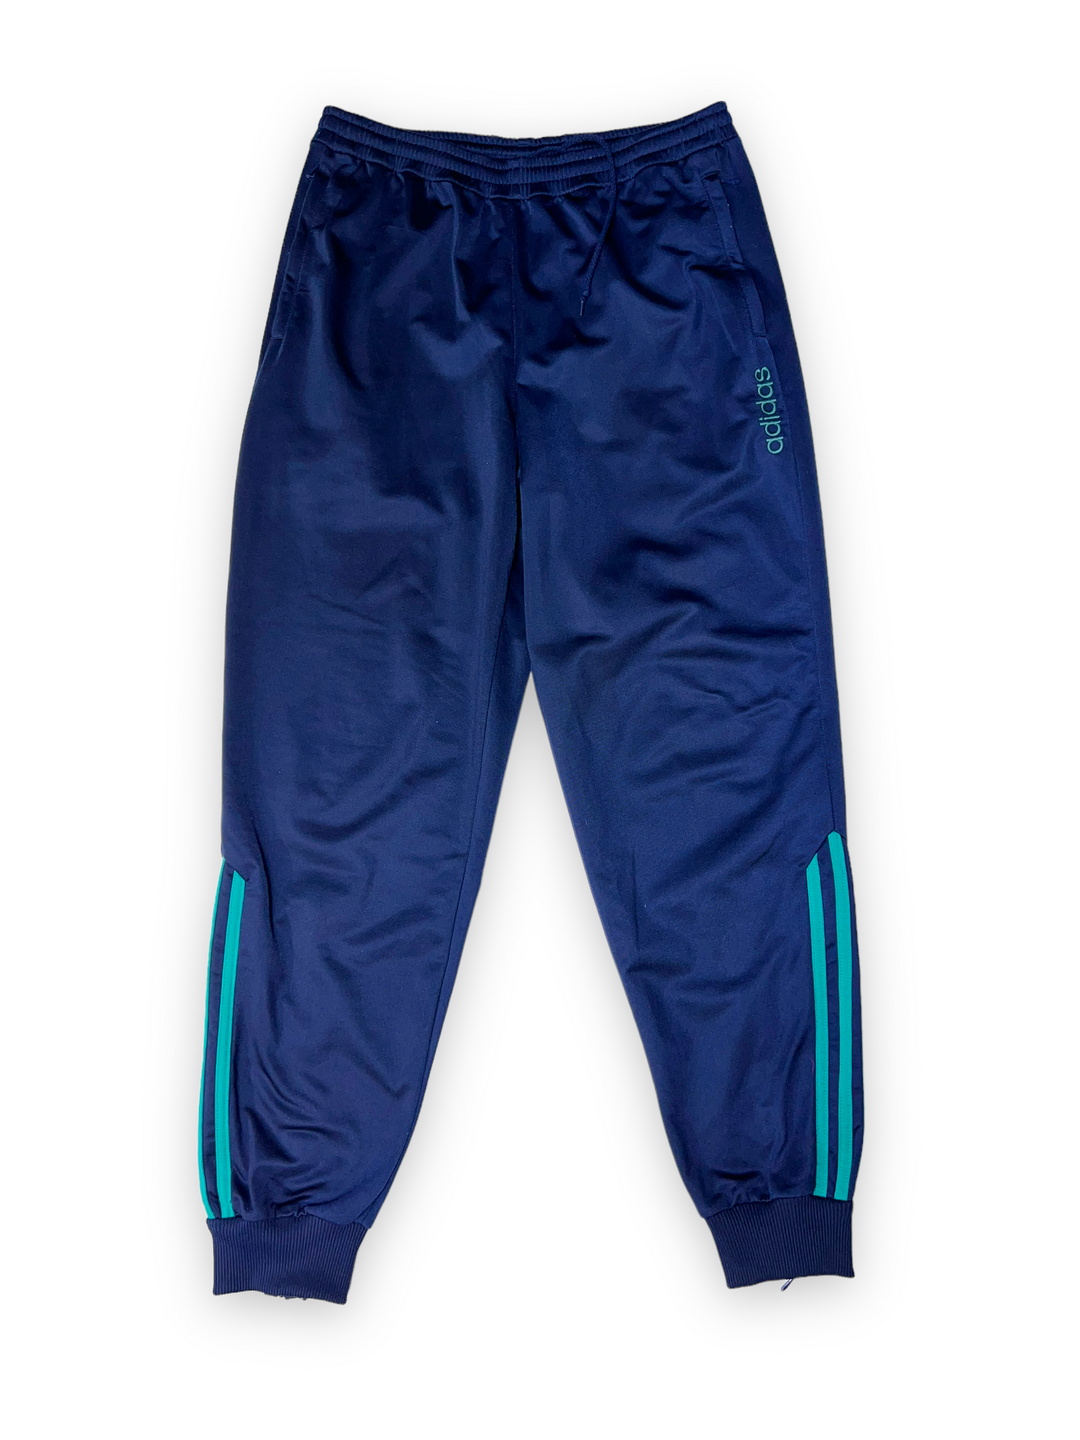 Vintage Adidas Sweatpants Men's S/M